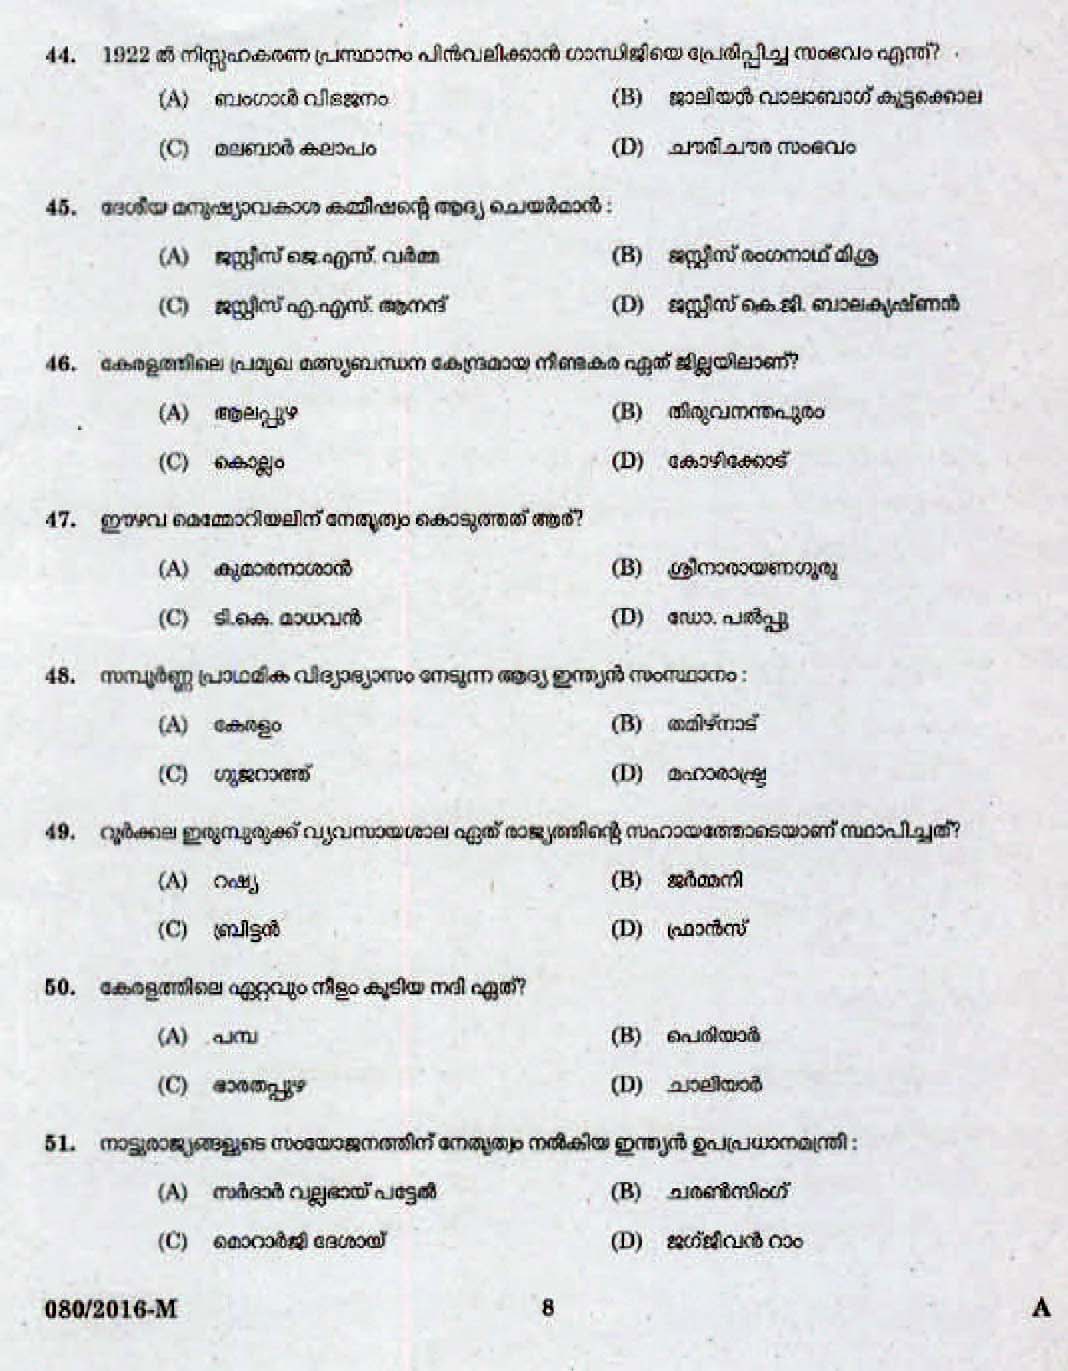 Kerala Last Grade Servants Exam 2016 Question Paper Code 0802016 M 6